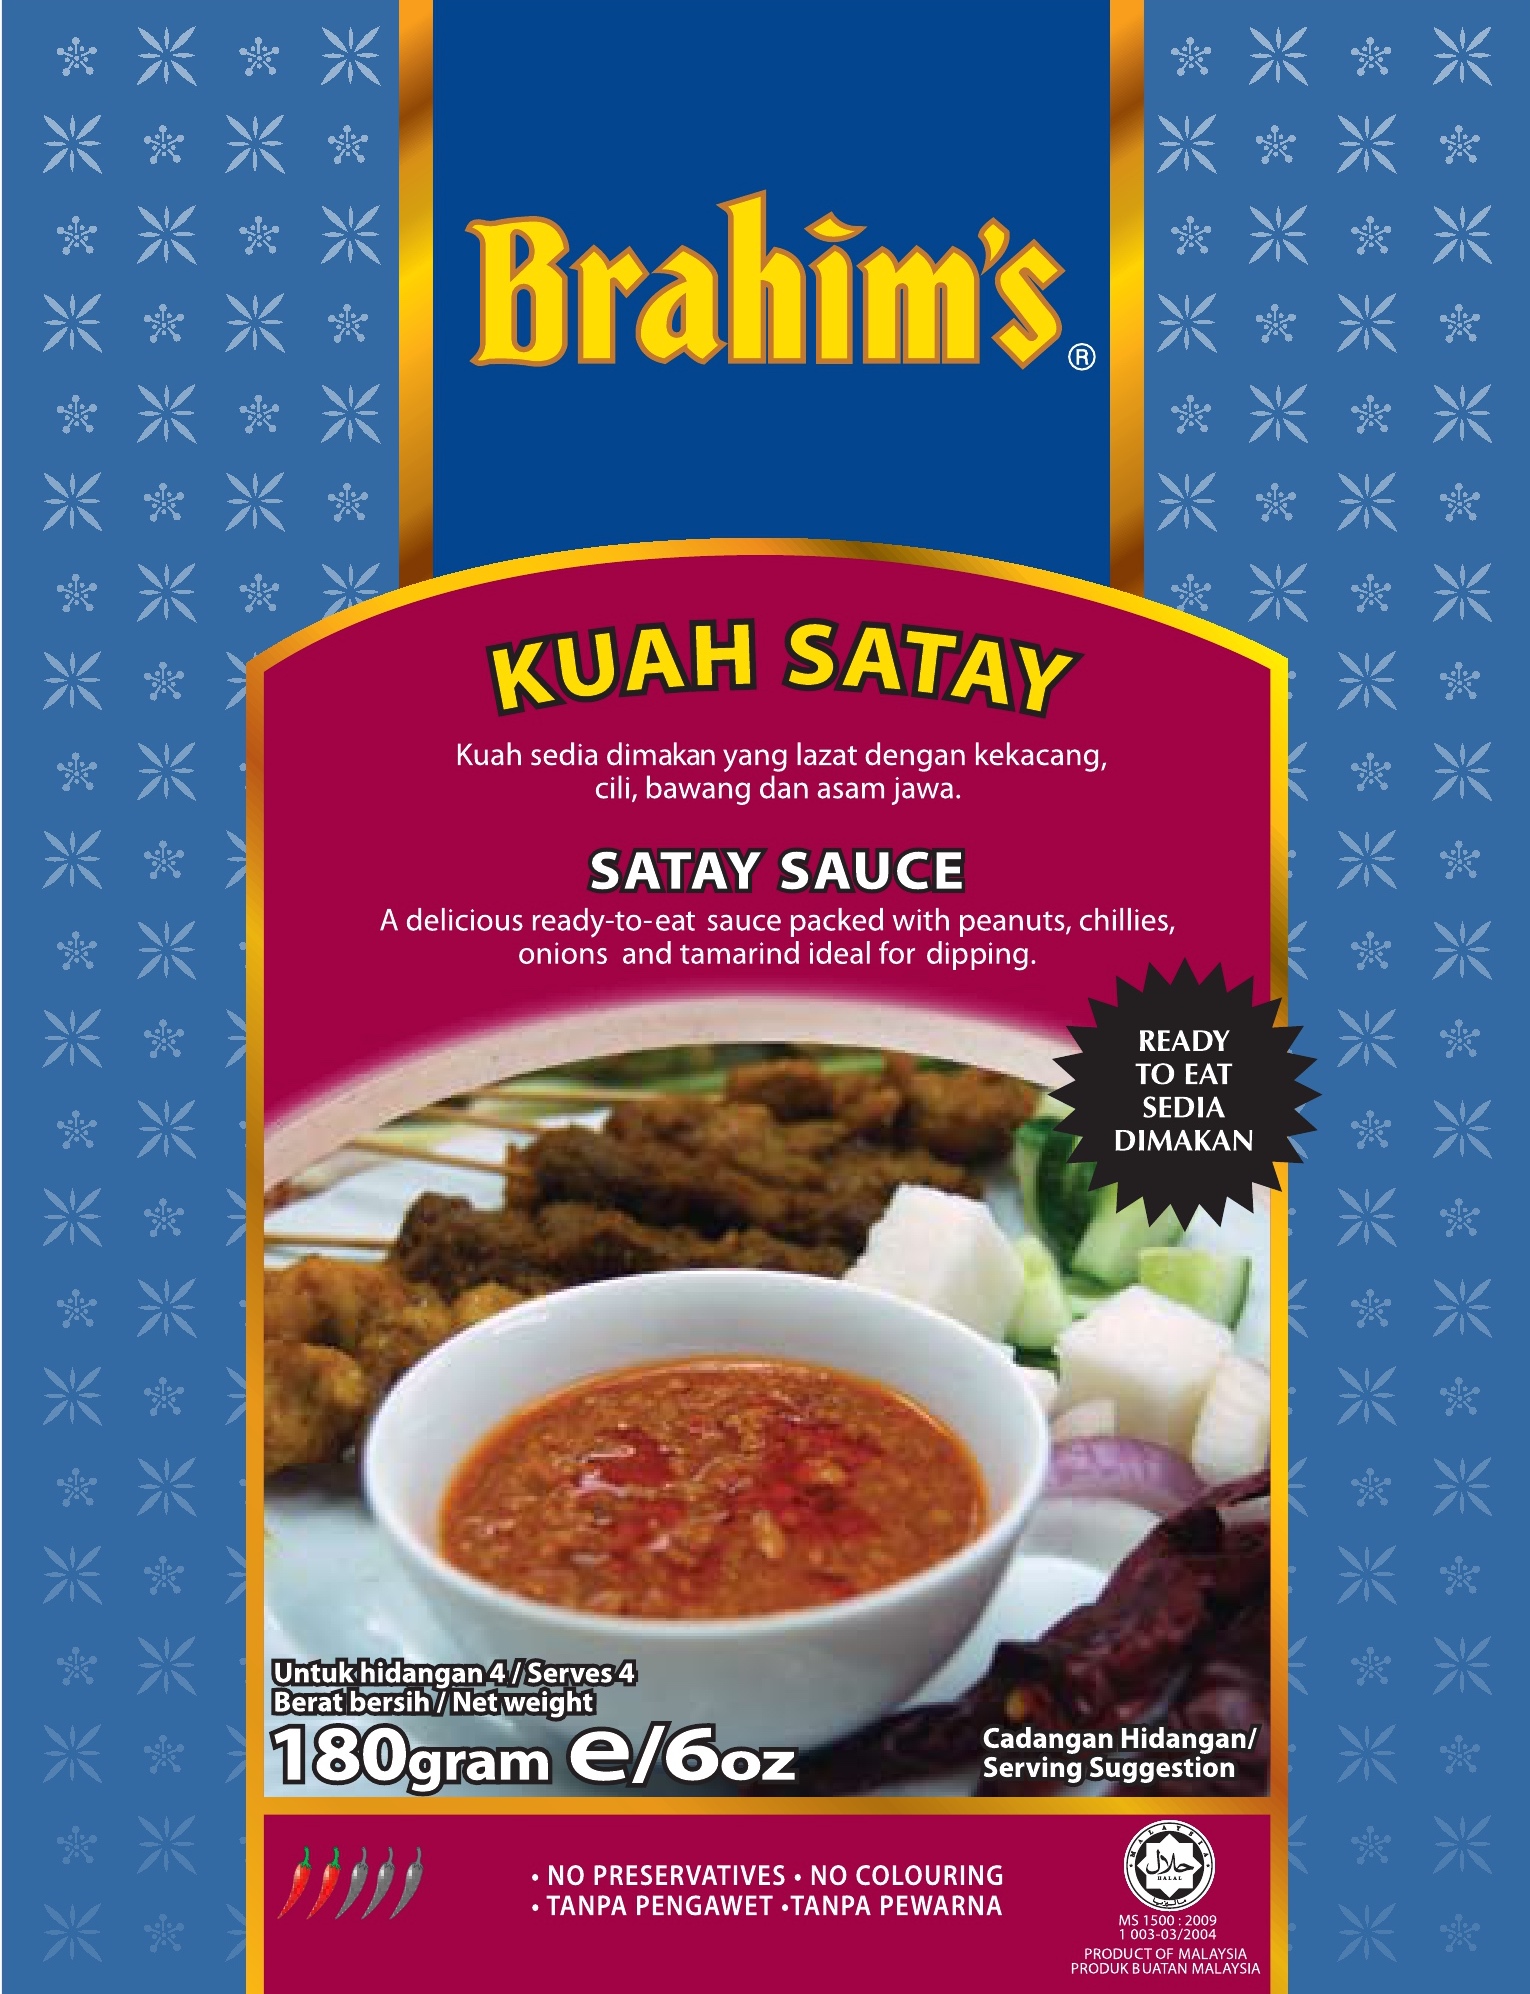 Satay Sauce /Kuah Satay (Brahim)